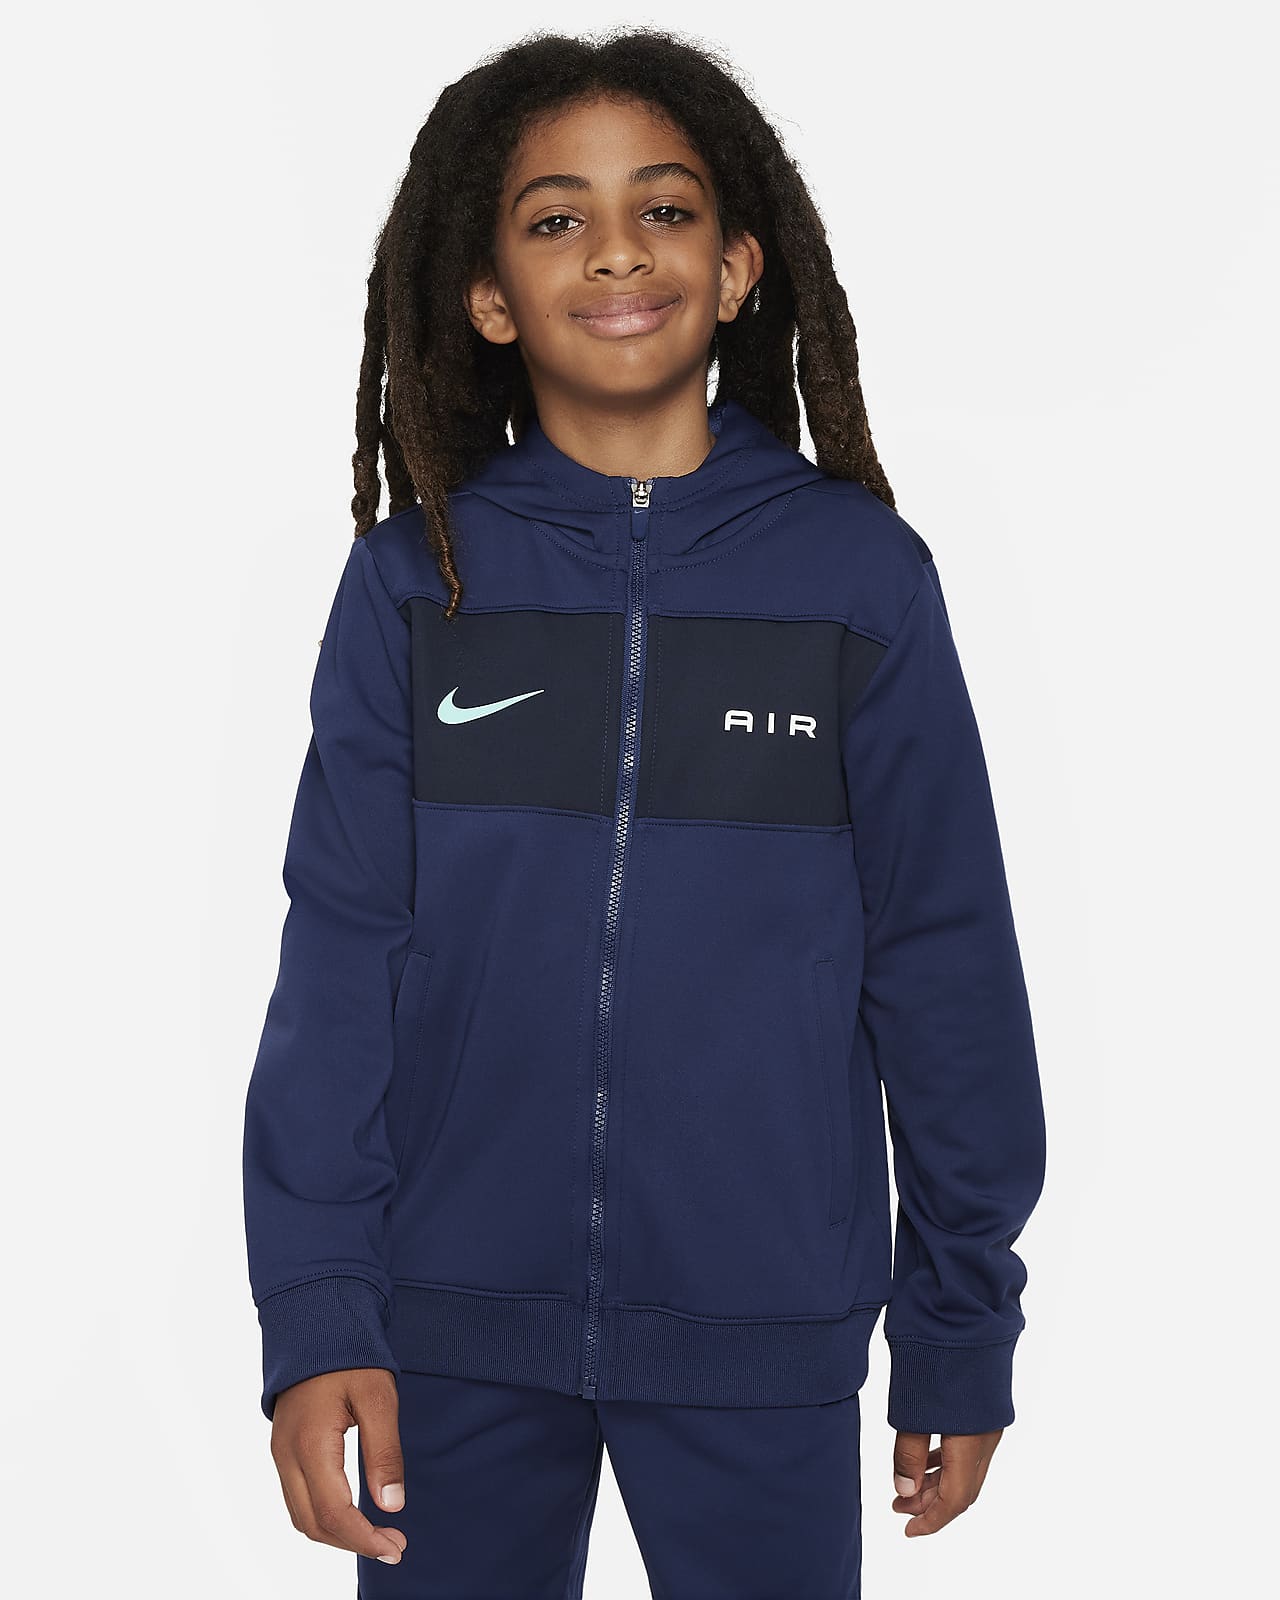 Nike Air Kapuzenjacke für ältere Kinder (Jungen)